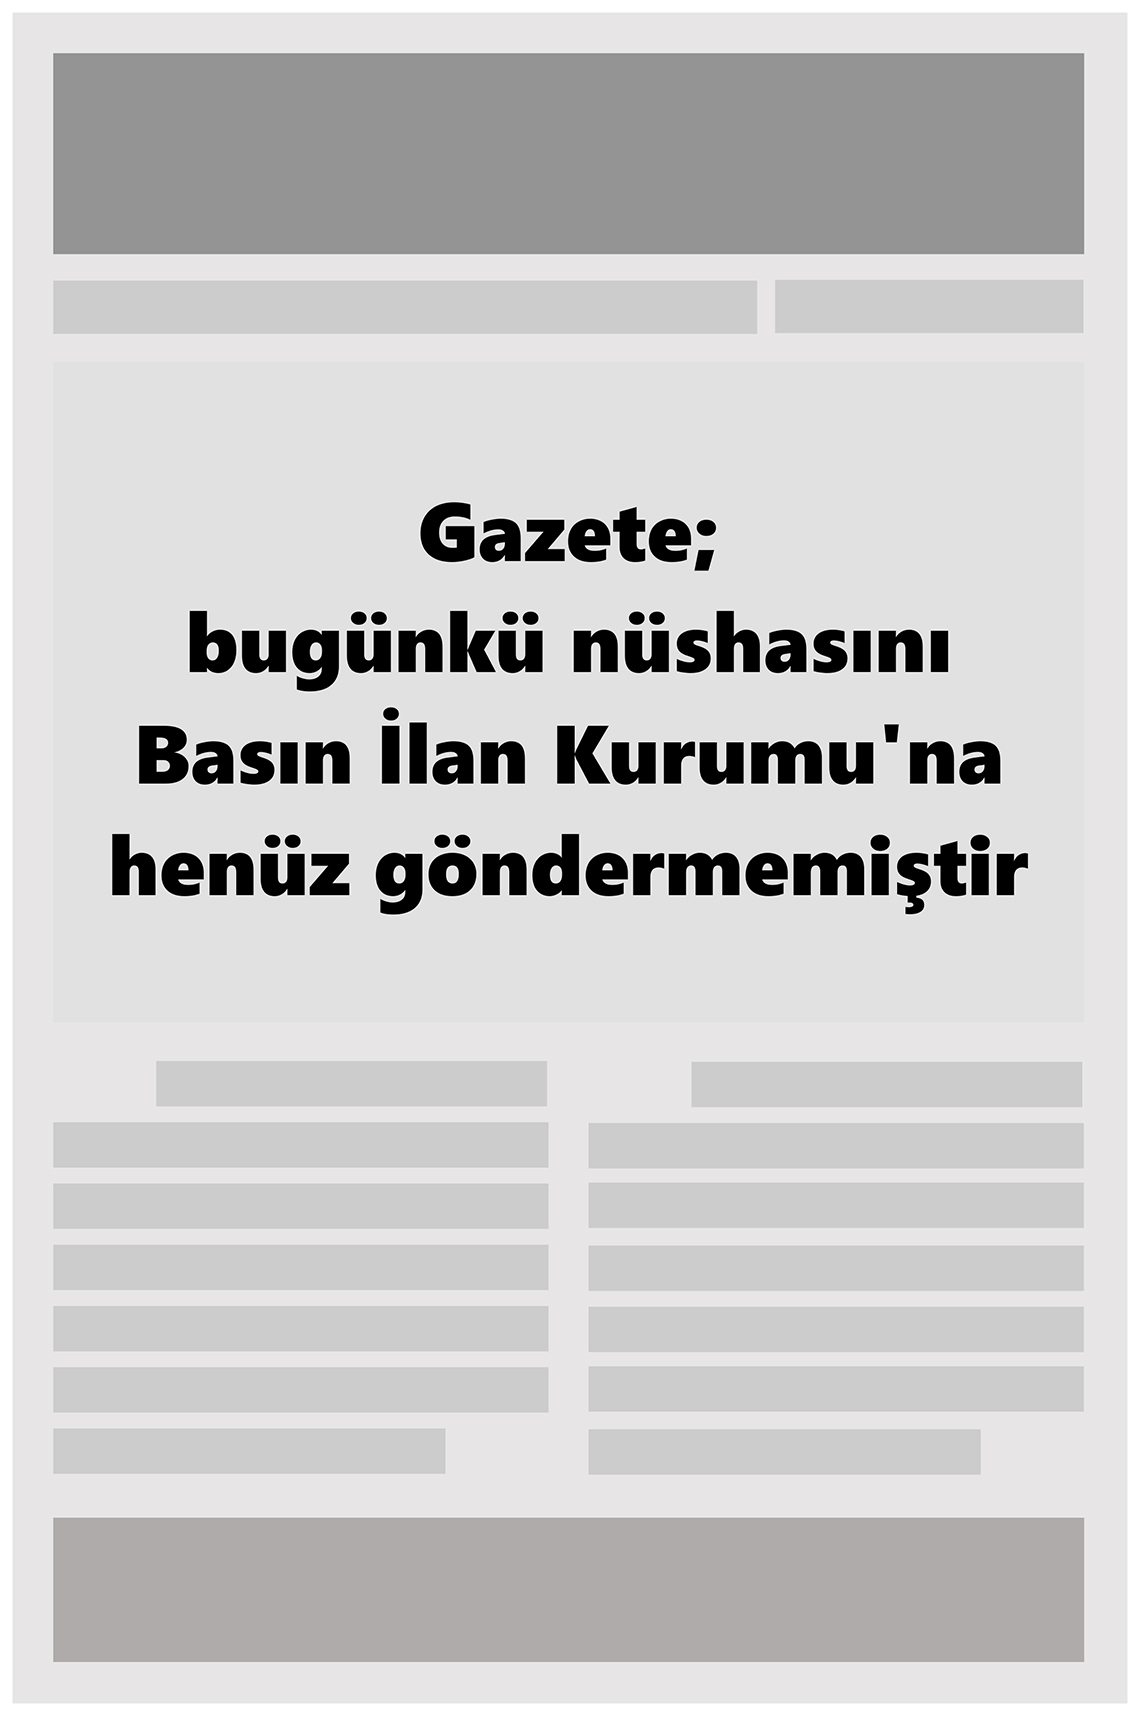 GENÇ GAZETE Gazetesi